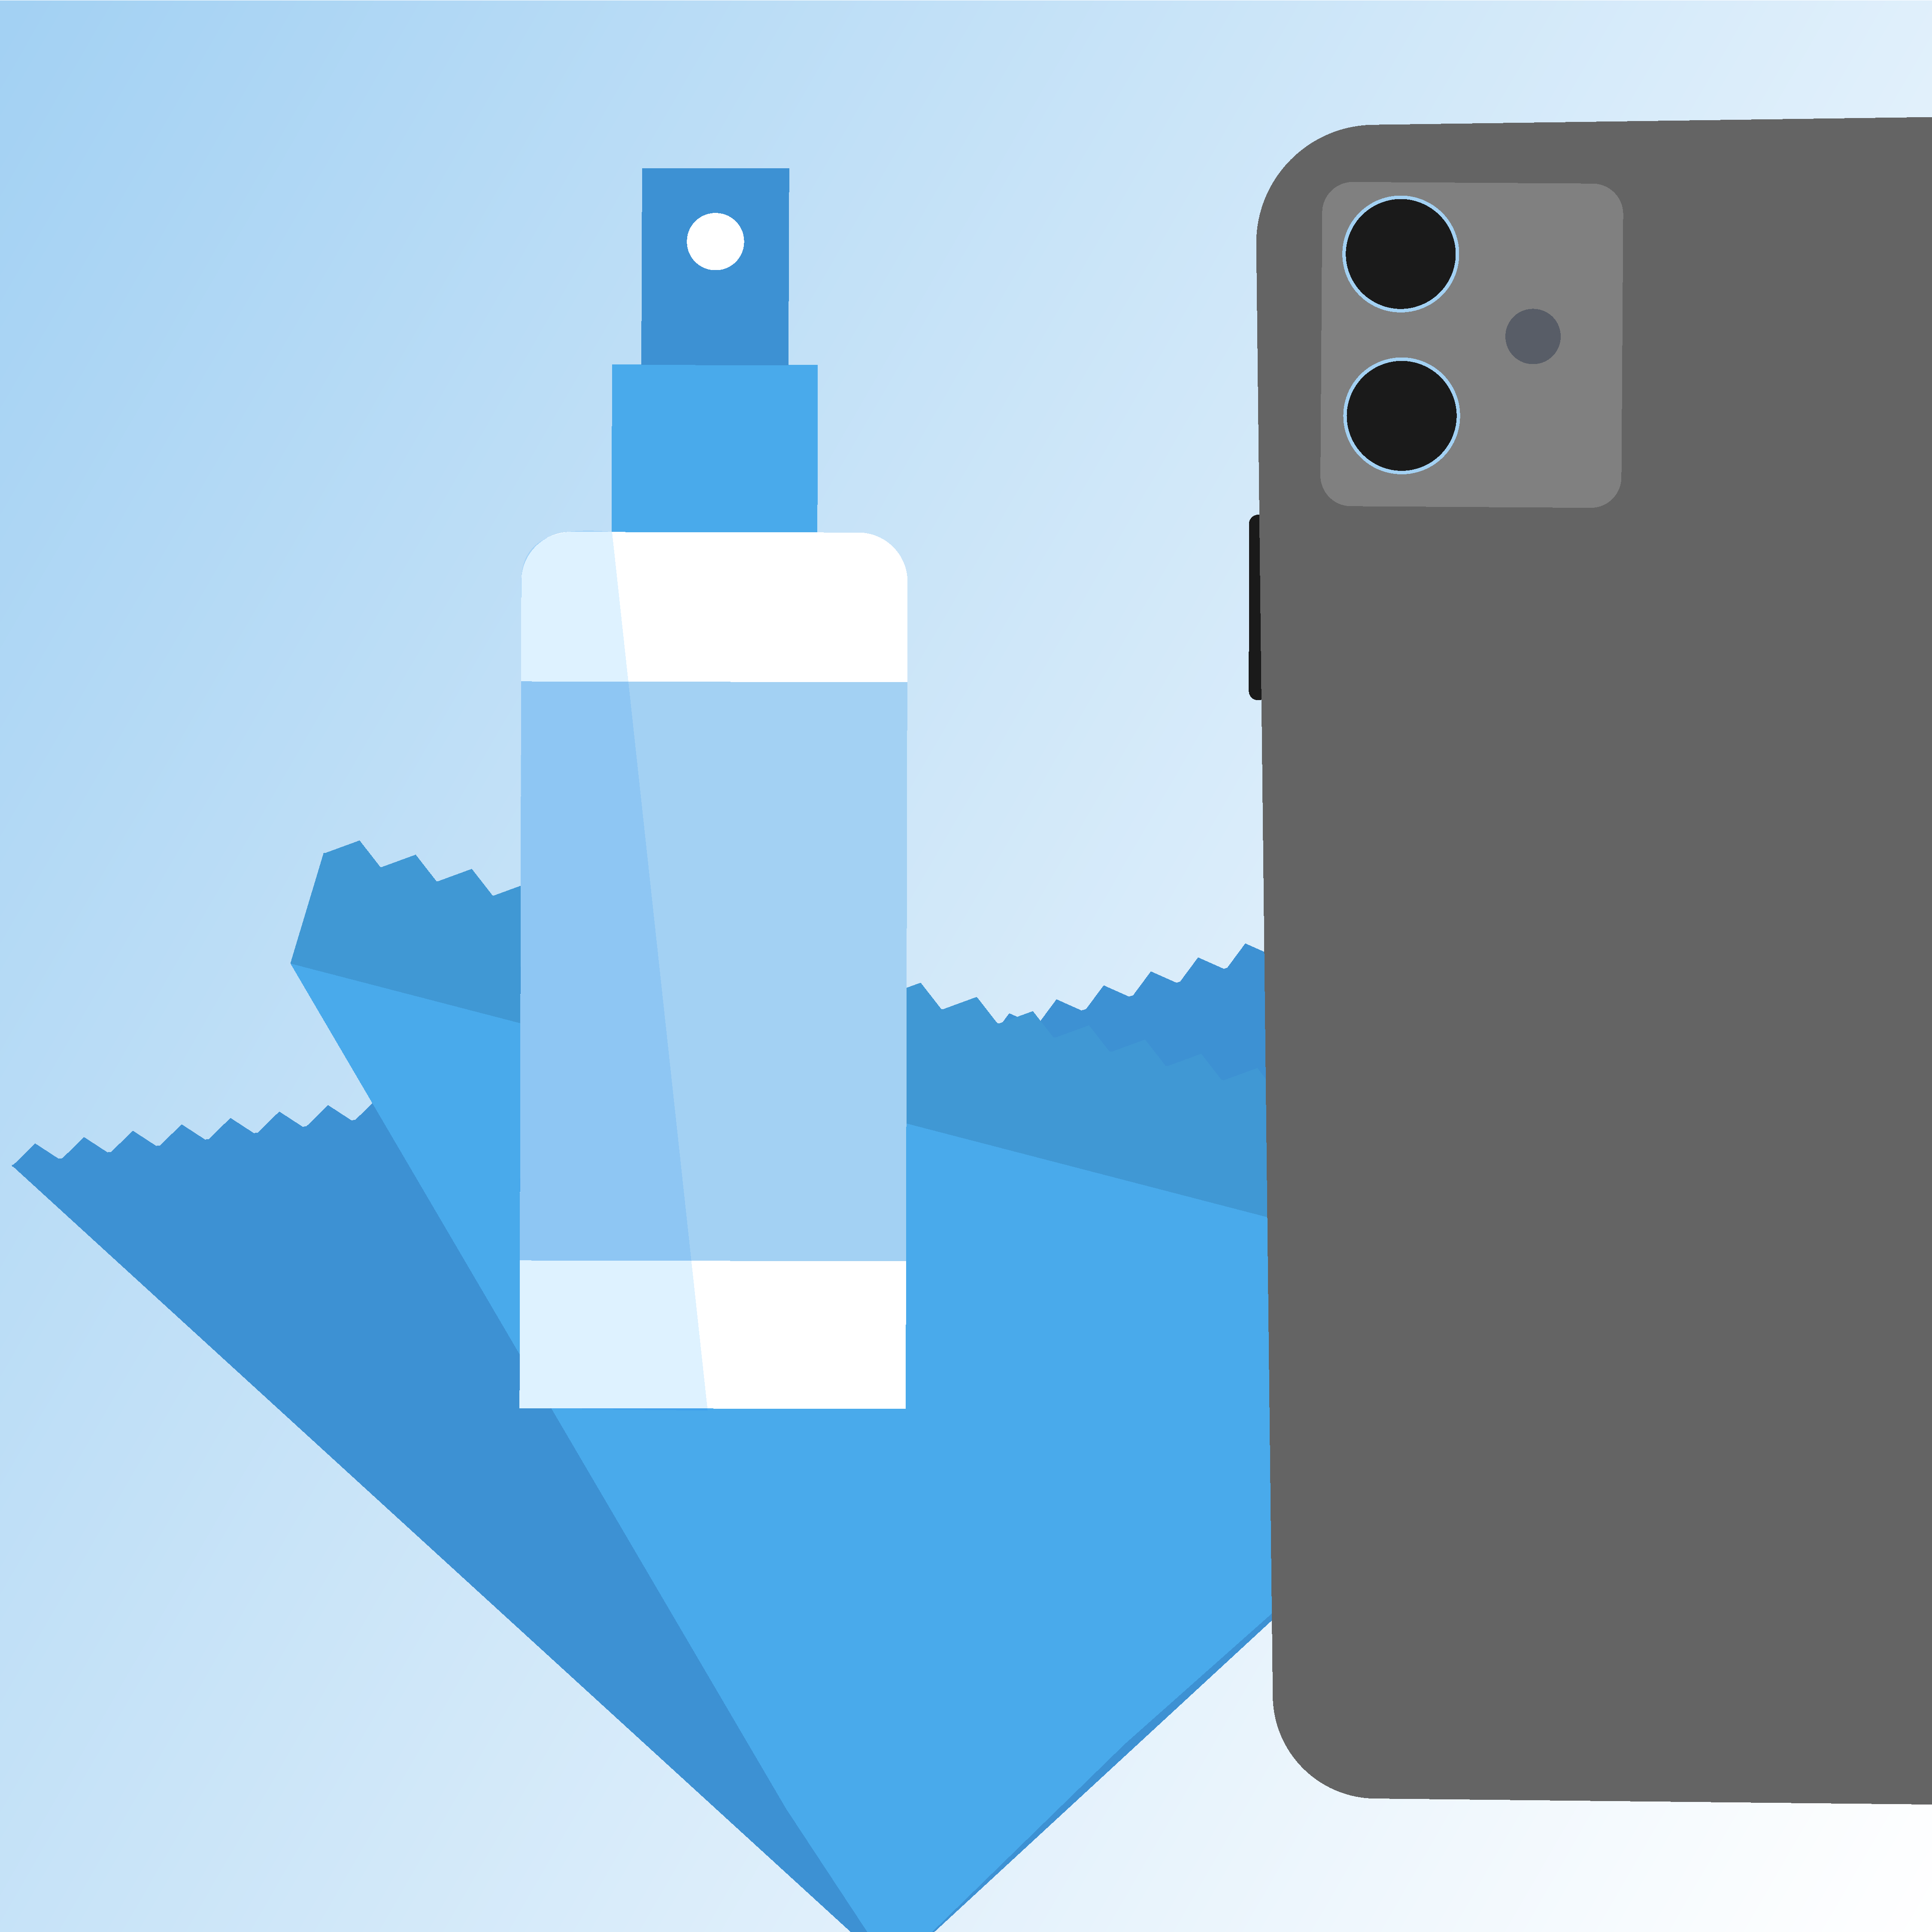 Desinfektionsspray-Flasche neben einem Smartphone